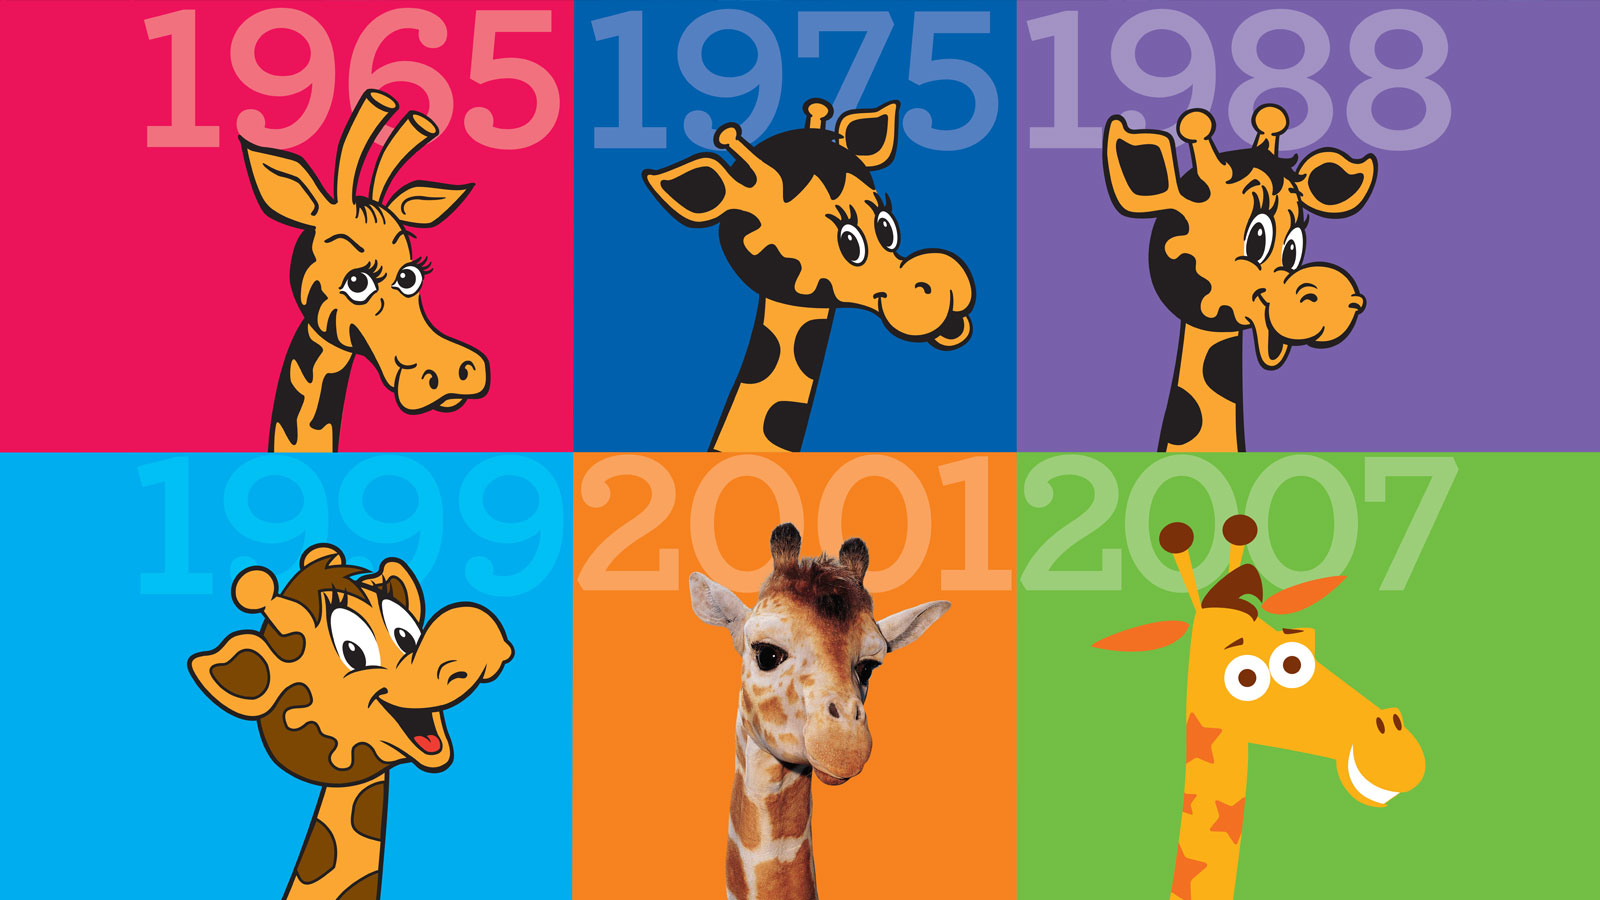 Design Evolution: Geoffrey the Giraffe 